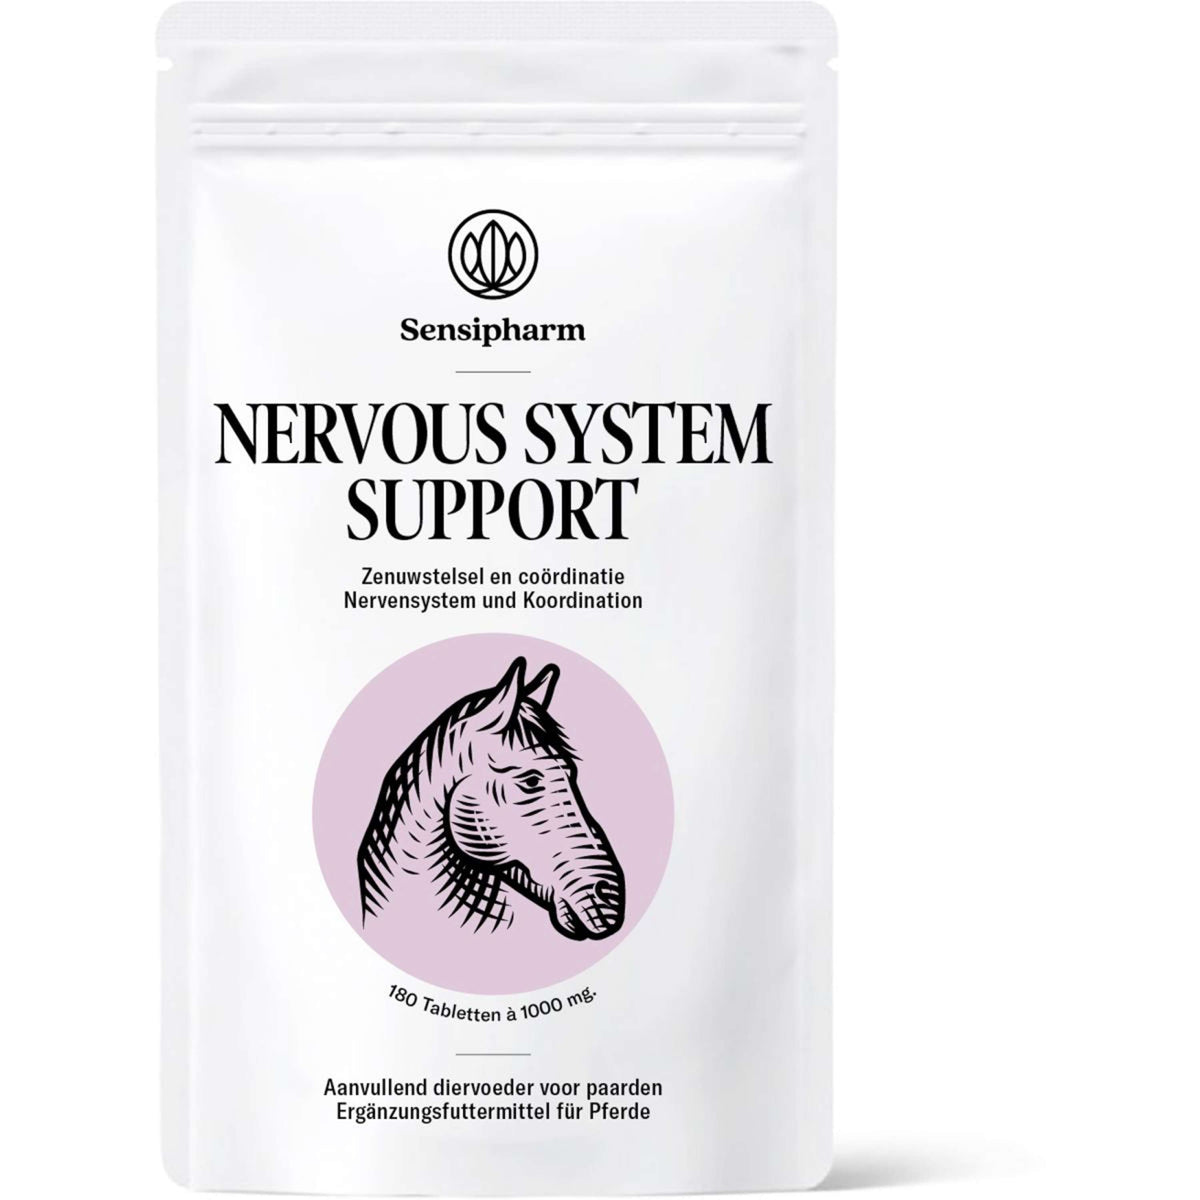 Sensipharm Nervous System Support